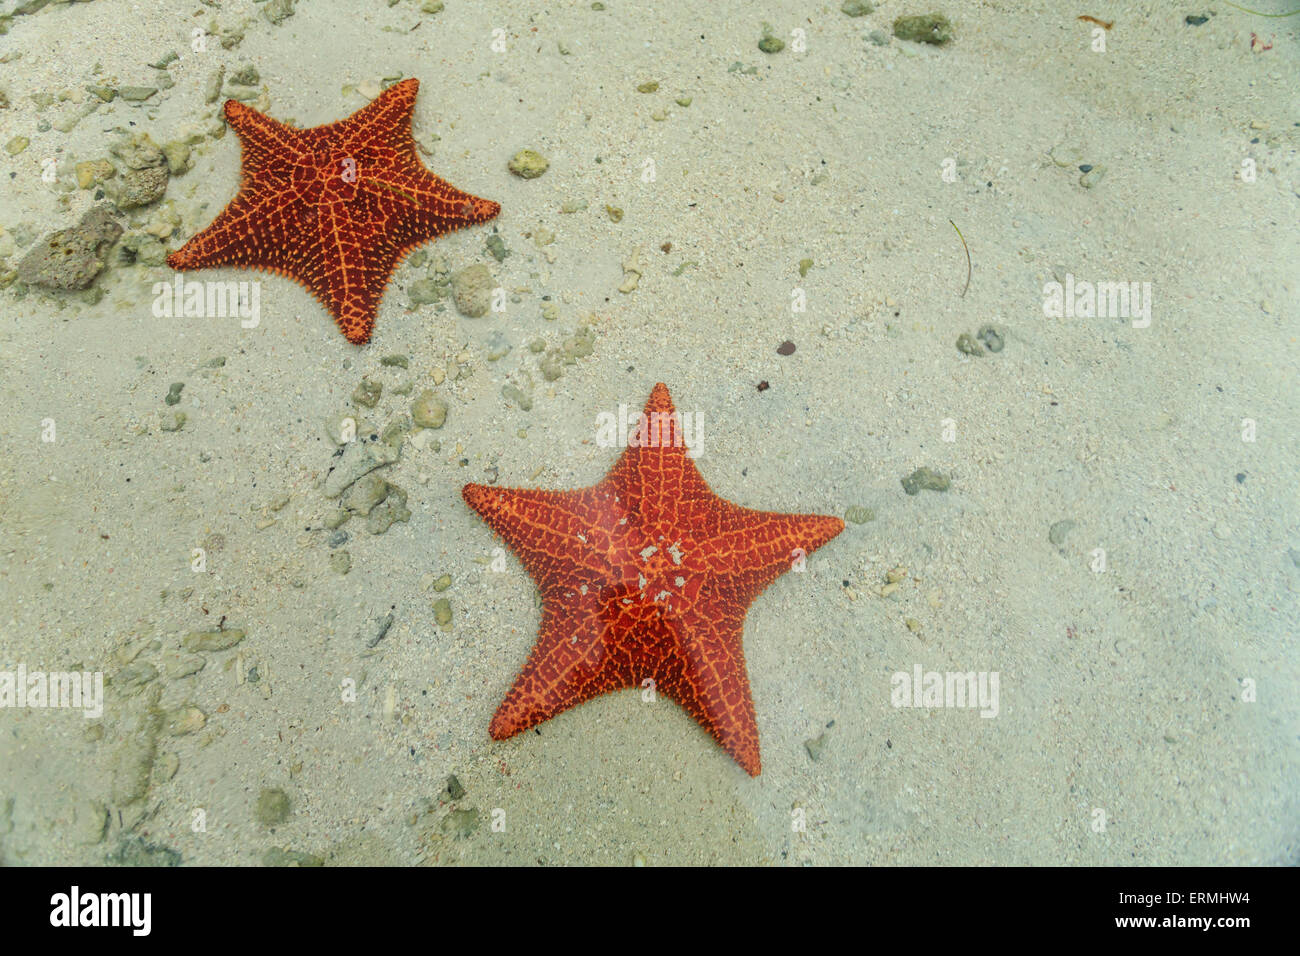 2 Seestern anzeigen schöne rote Farbe und Design auf weißem Sand im  tropischen Flachwasser Stockfotografie - Alamy